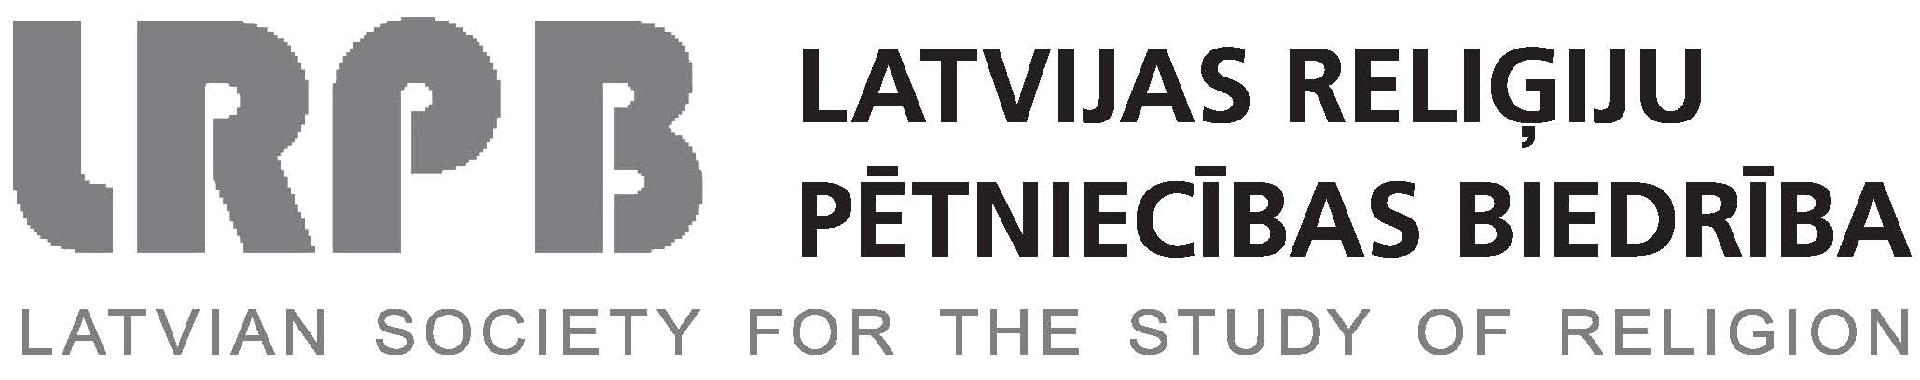 Lettische Gesellschaft für Religionswissenschaft